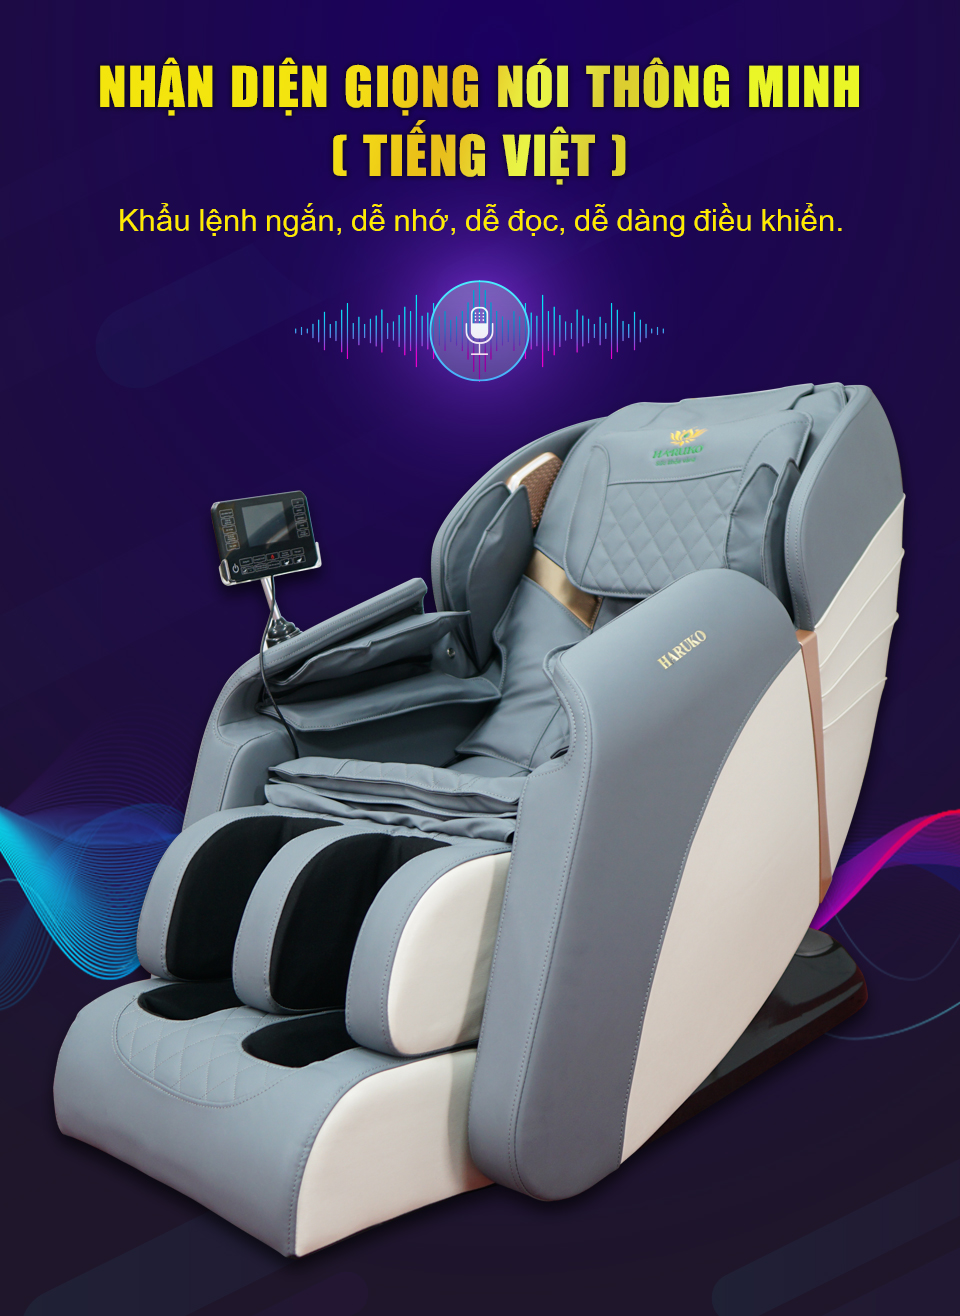 Ghế massage tới từ Akina còn được tích hợp hệ thống nhận diện giọng nói thông minh,dễ dàng sử dụng